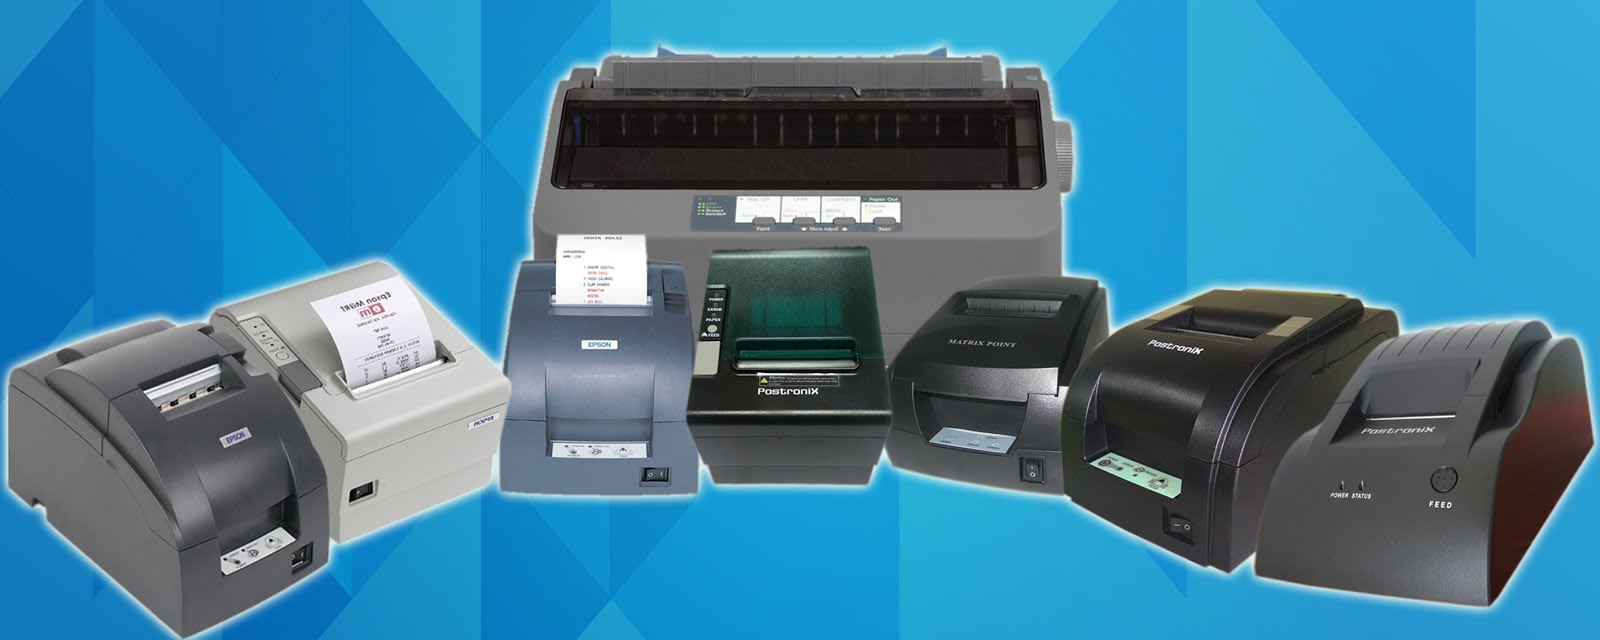 printer kasir